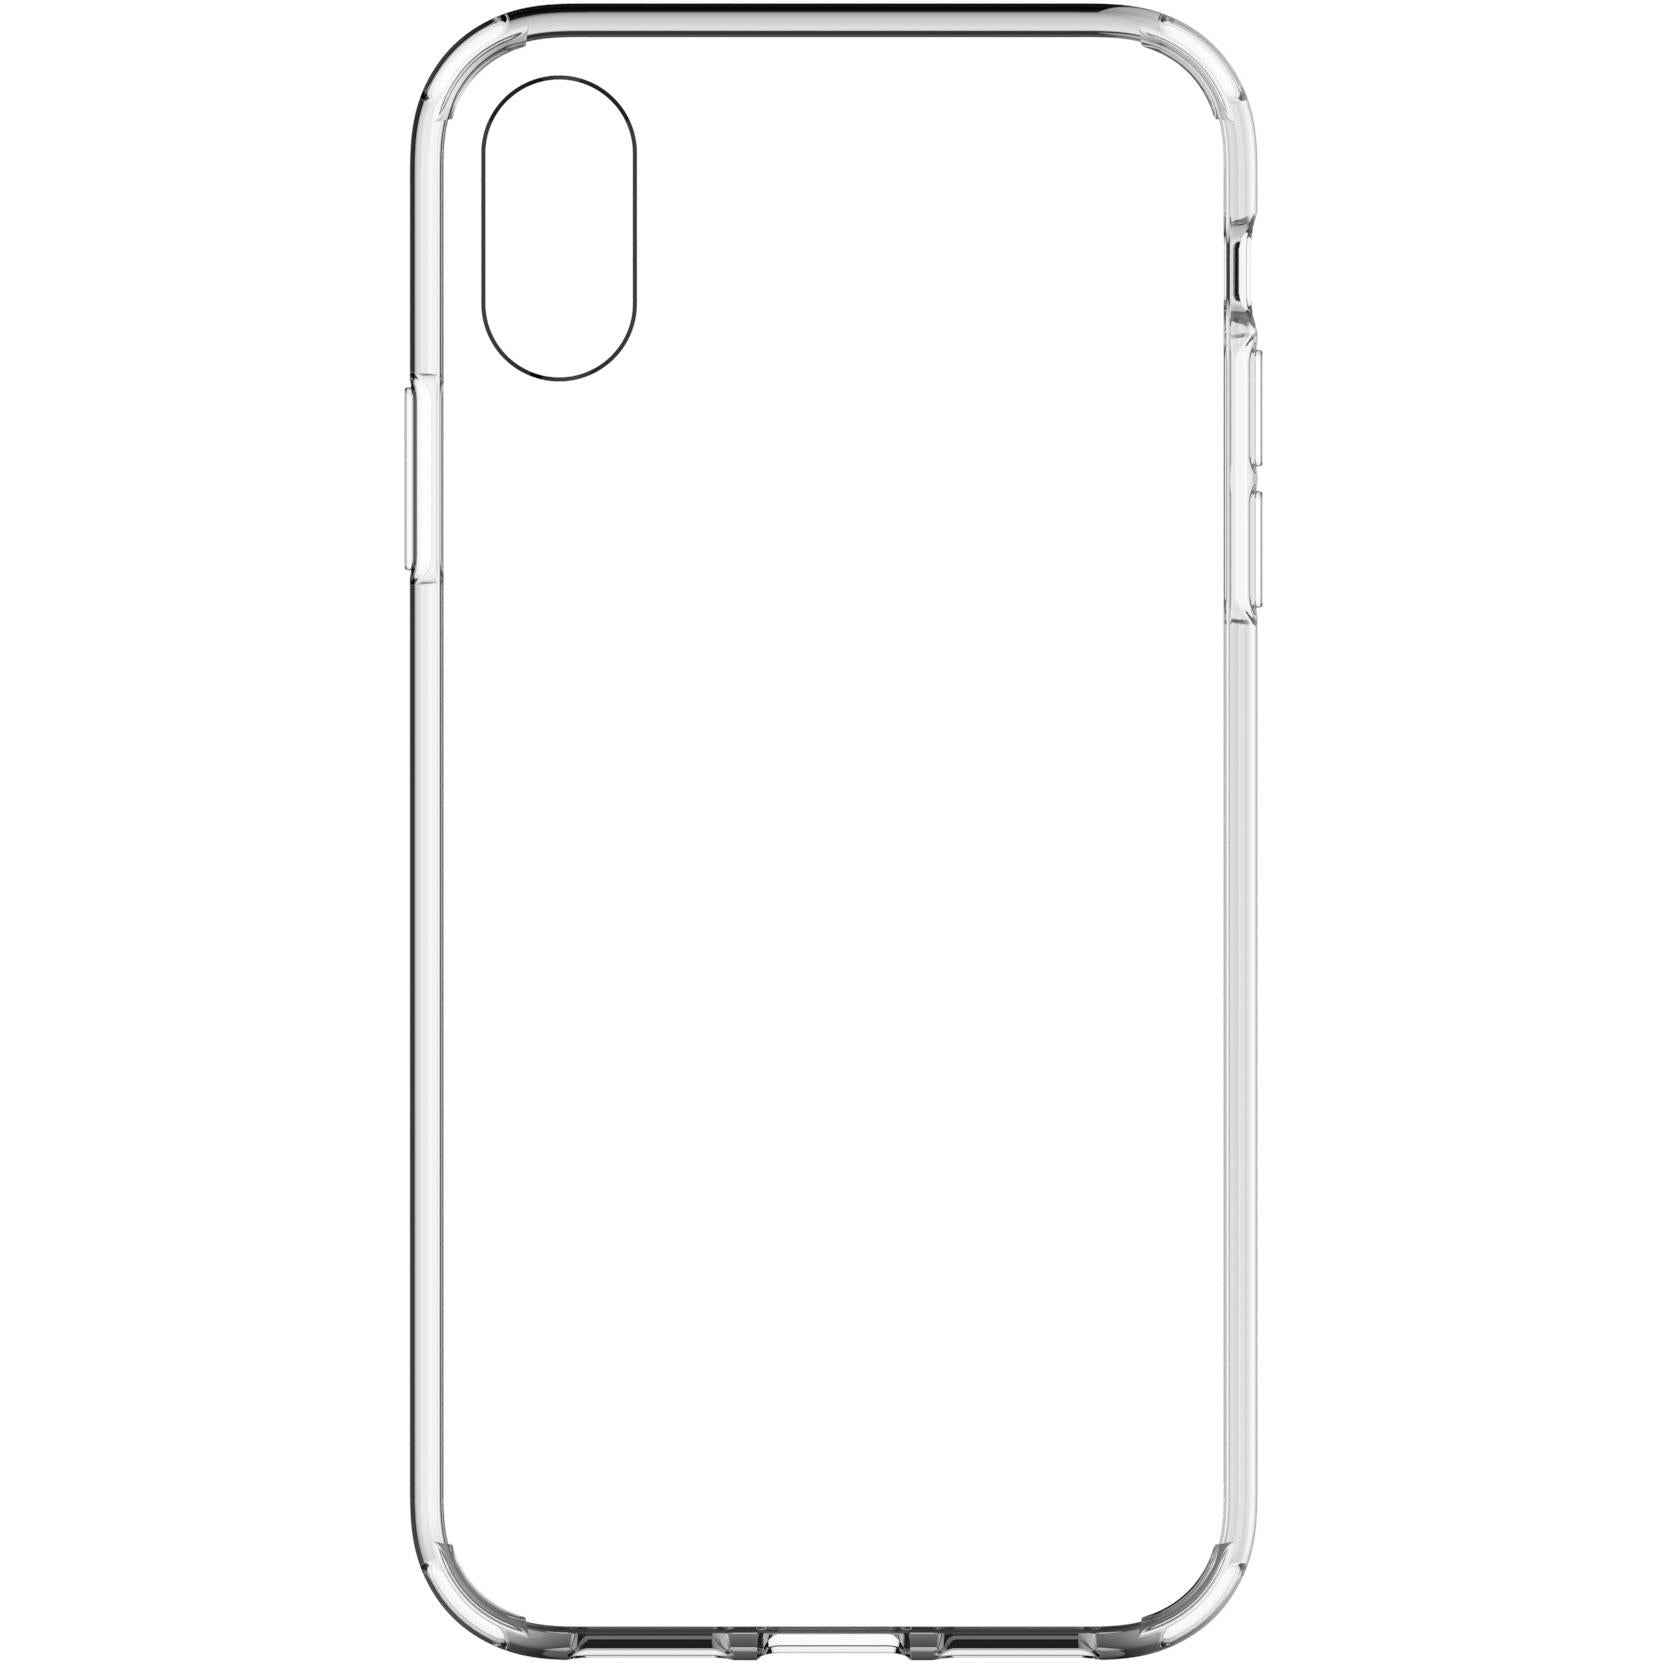 Terminator Case - iPhone 7 / 8 / SE 2020 Series